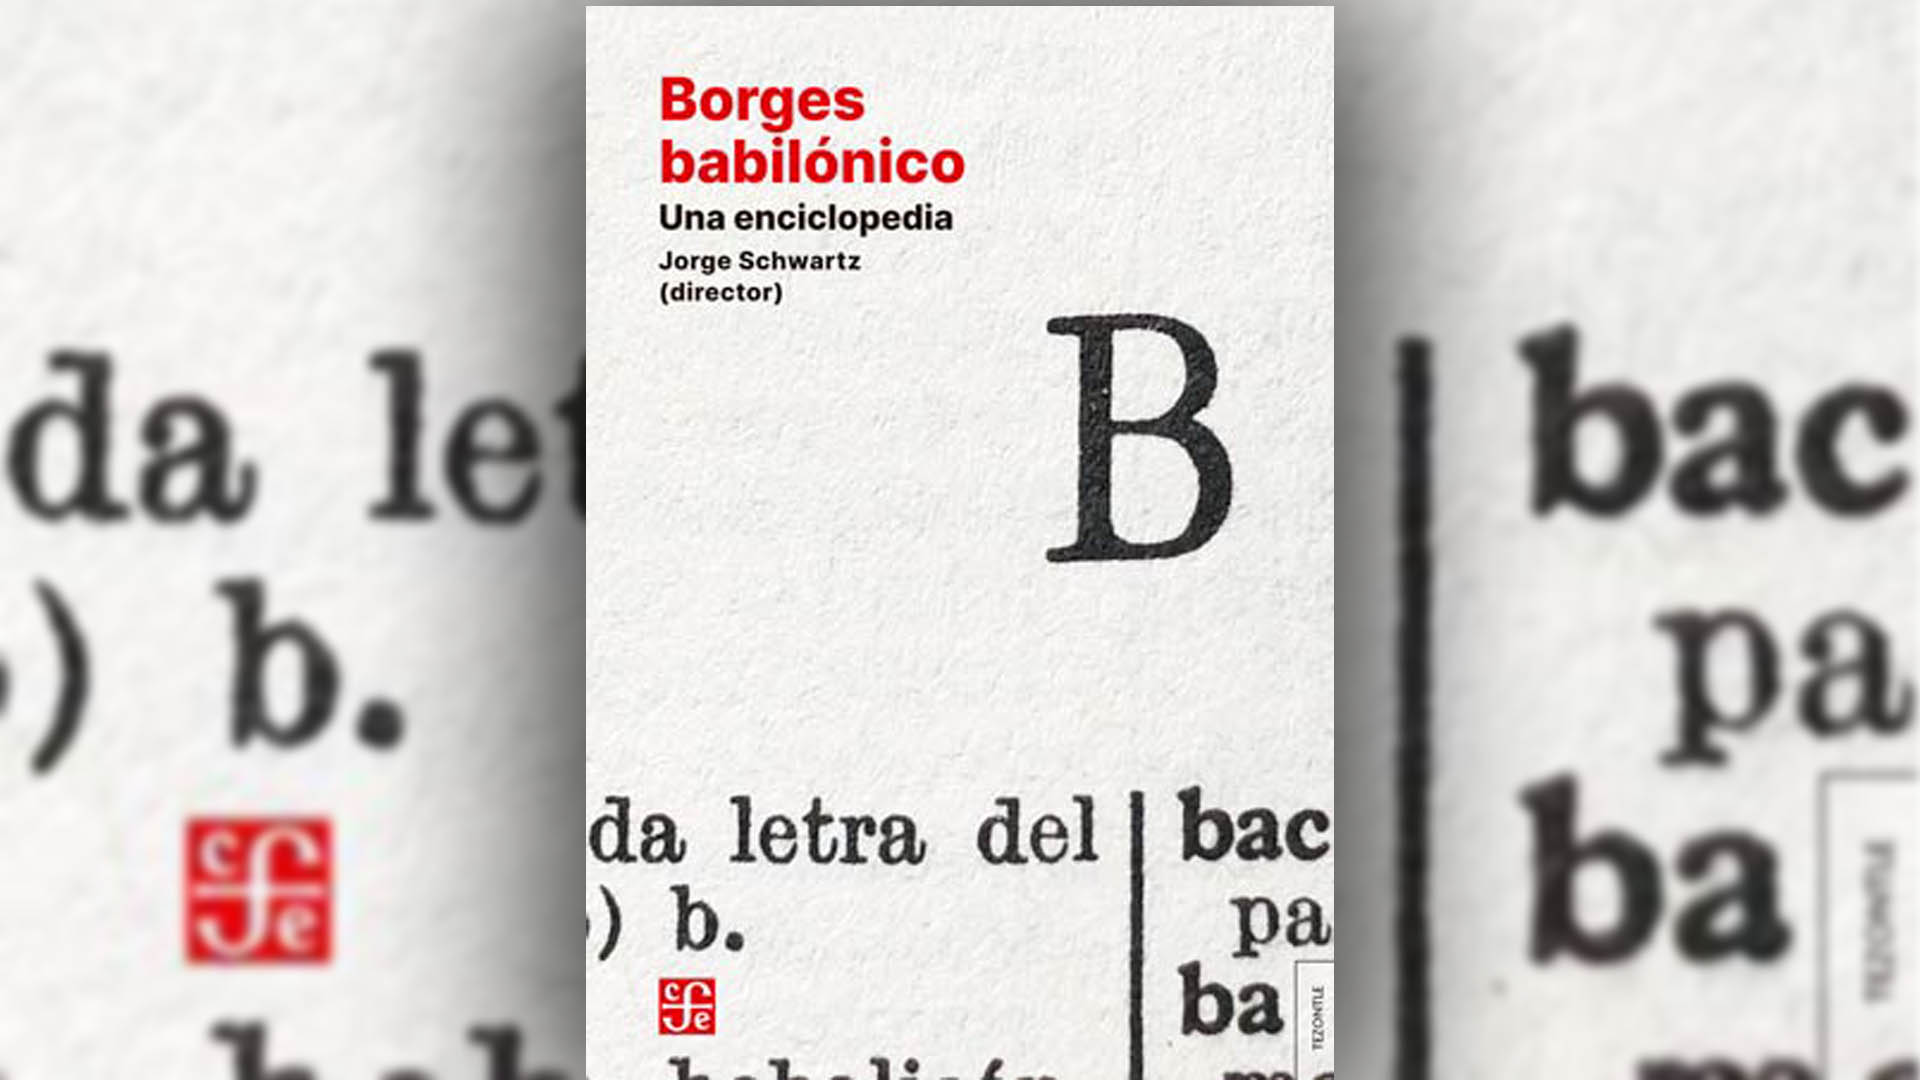 Portada de "Borges babilónico. Una enciclopedia", compilado por Jorge Schwartz y editado por Fondo de Cultura Económica. 